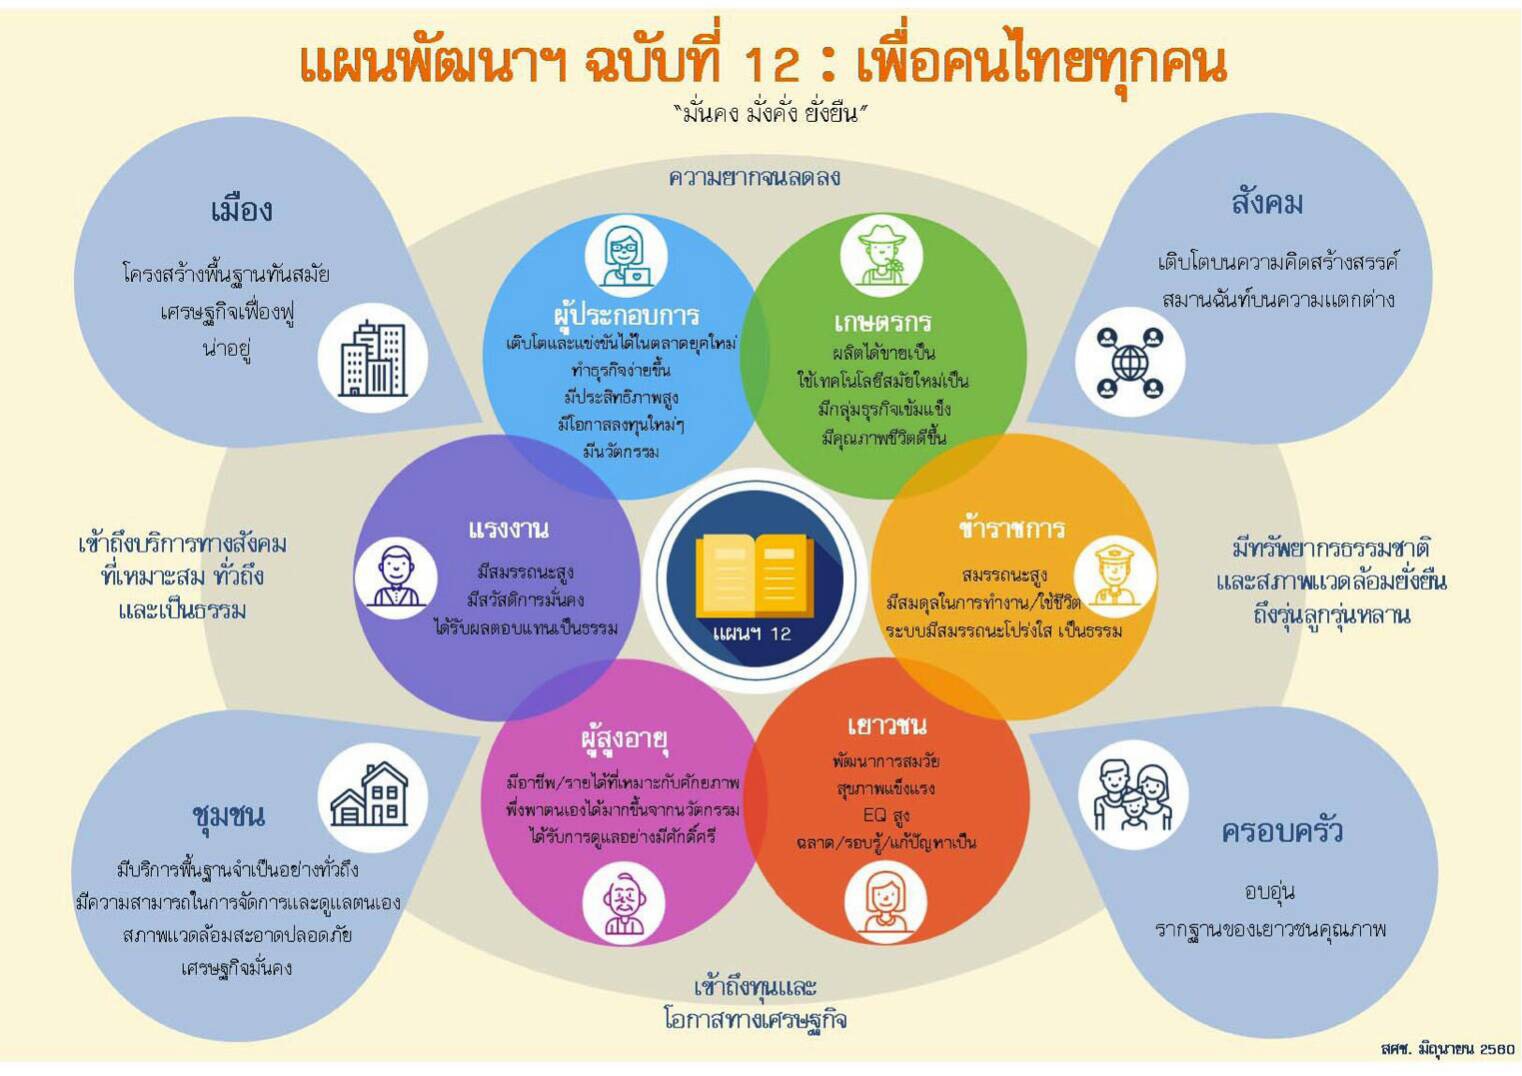 ครูนายสังคมศึกษา - หน่วย 2 เศรษฐกิจพอเพียงกับการพัฒนาเศรษฐกิจไทย